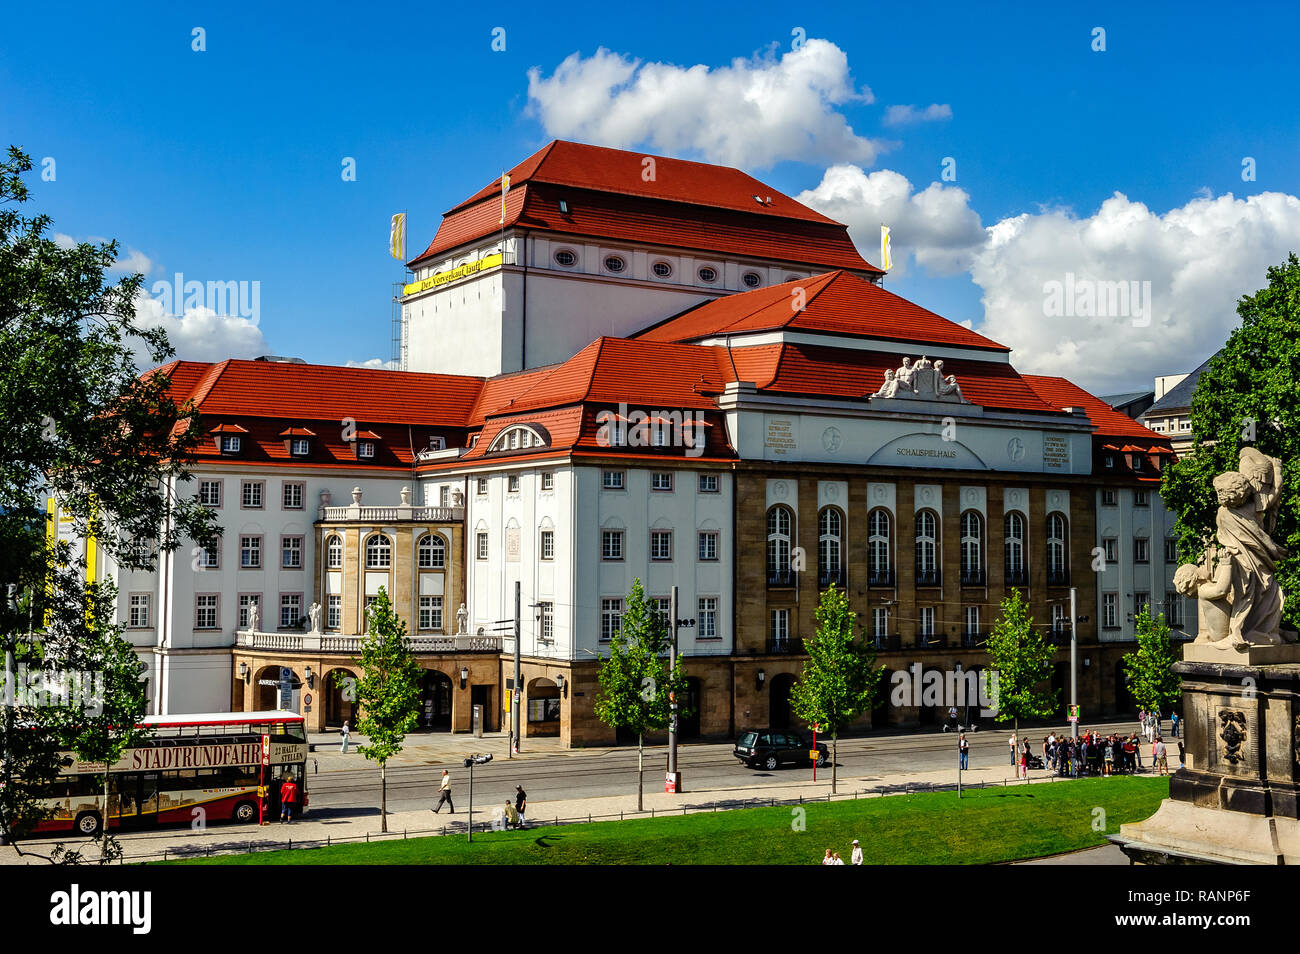 Das Staatsschauspiel Dresden wurde von 1911 bis 1913 gegenüber dem Palast der Dresden (Zwinger) gebaut. Das Design ist mit der Zwinger Arachiten, harmonisierte Stockfoto